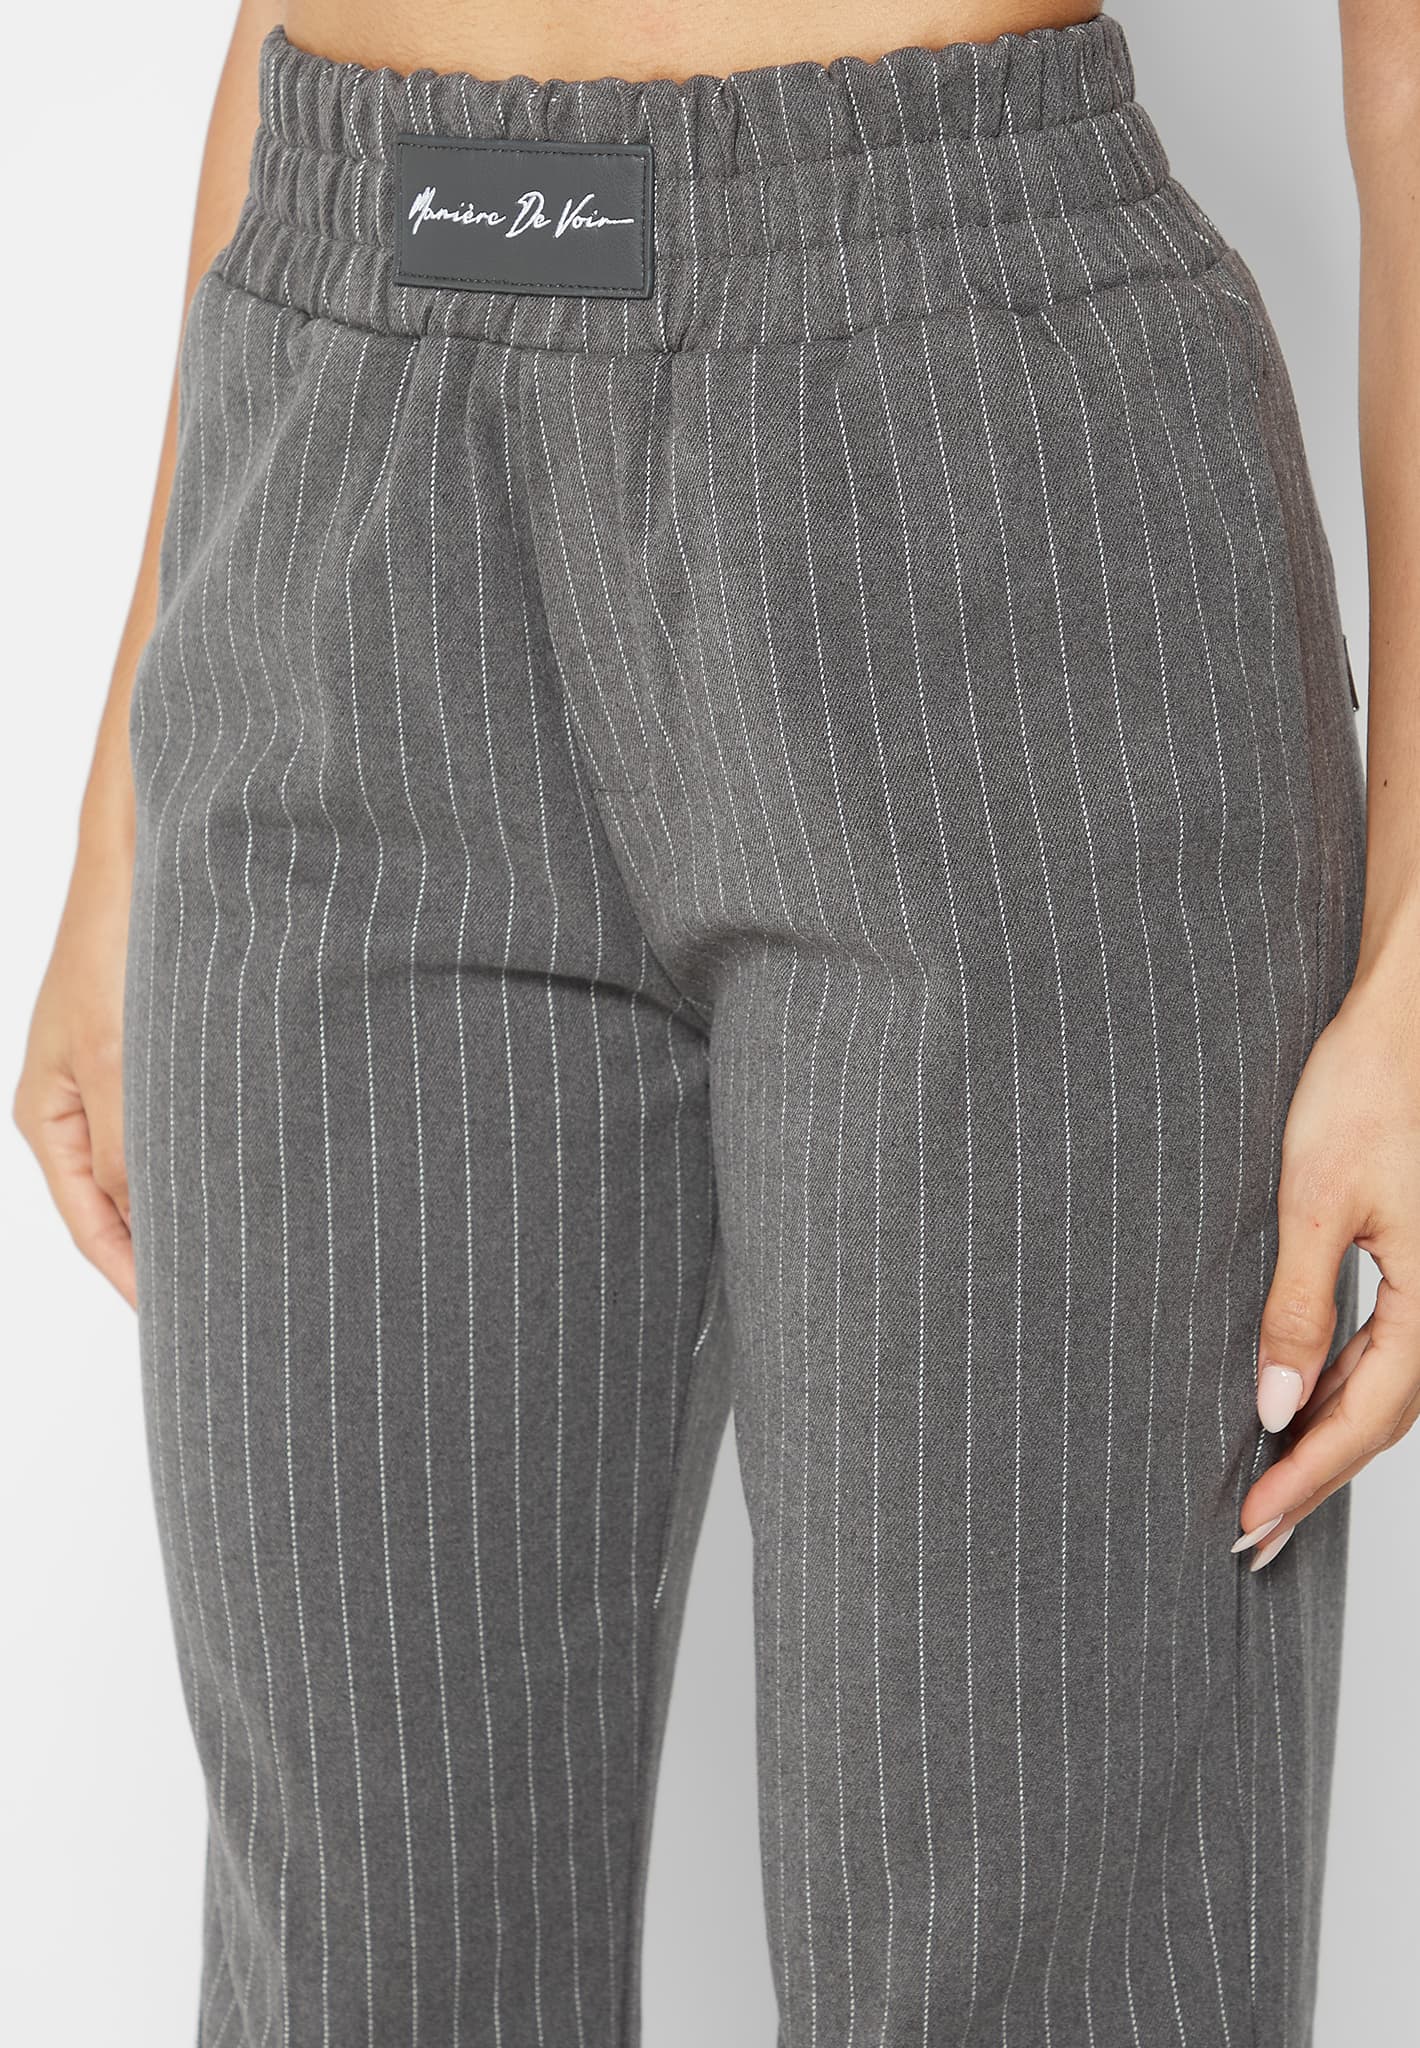 Unique Plain Ladies Grey Cotton Trouse, Size: 32 at Rs 250/piece